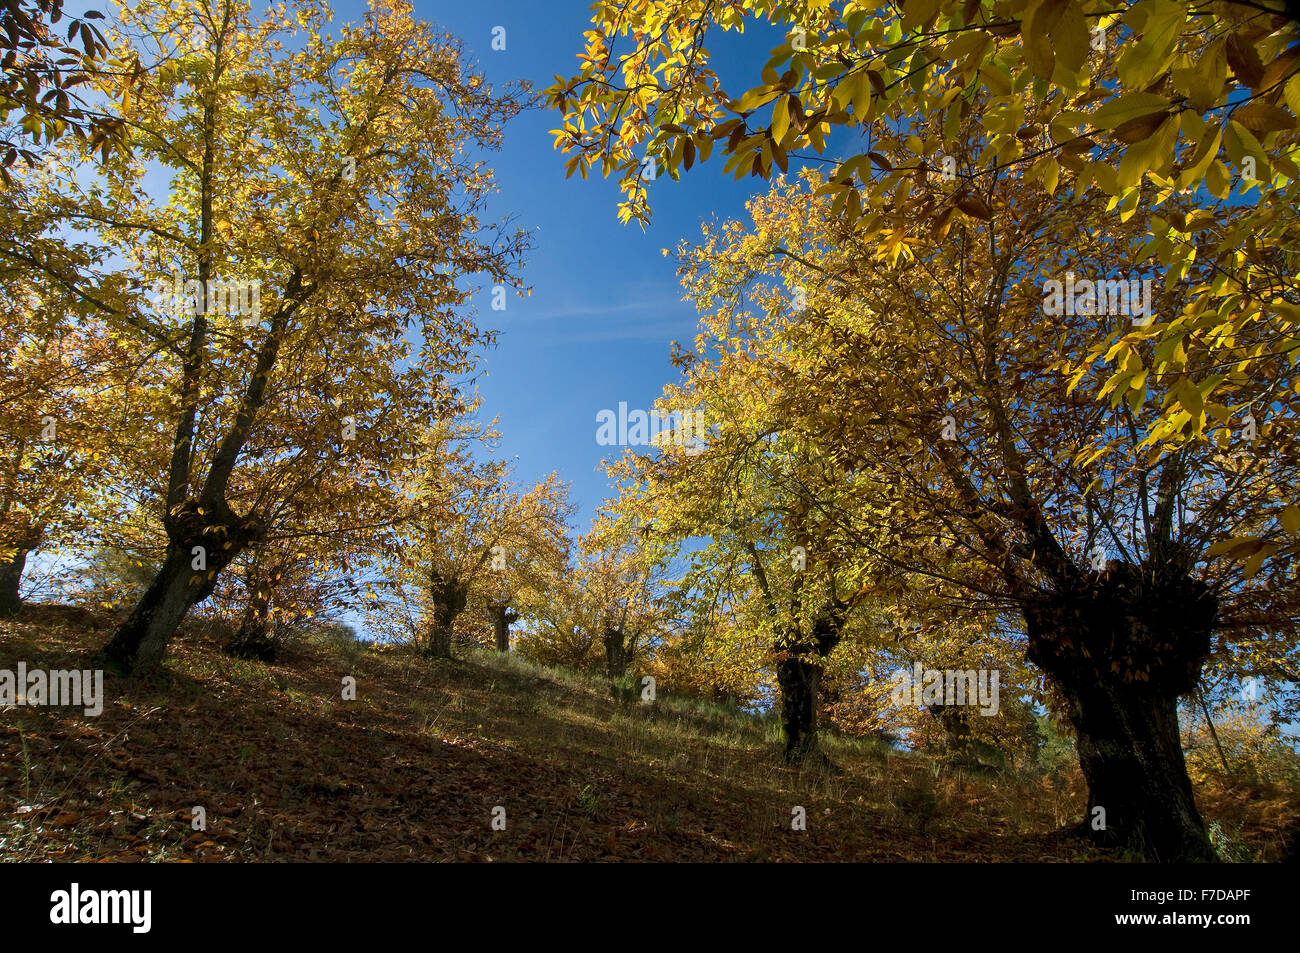 Le Parc Naturel de Sierra de Aracena, châtaigniers en automne, Aracena, Huelva province, région d'Andalousie, Espagne, Europe Banque D'Images